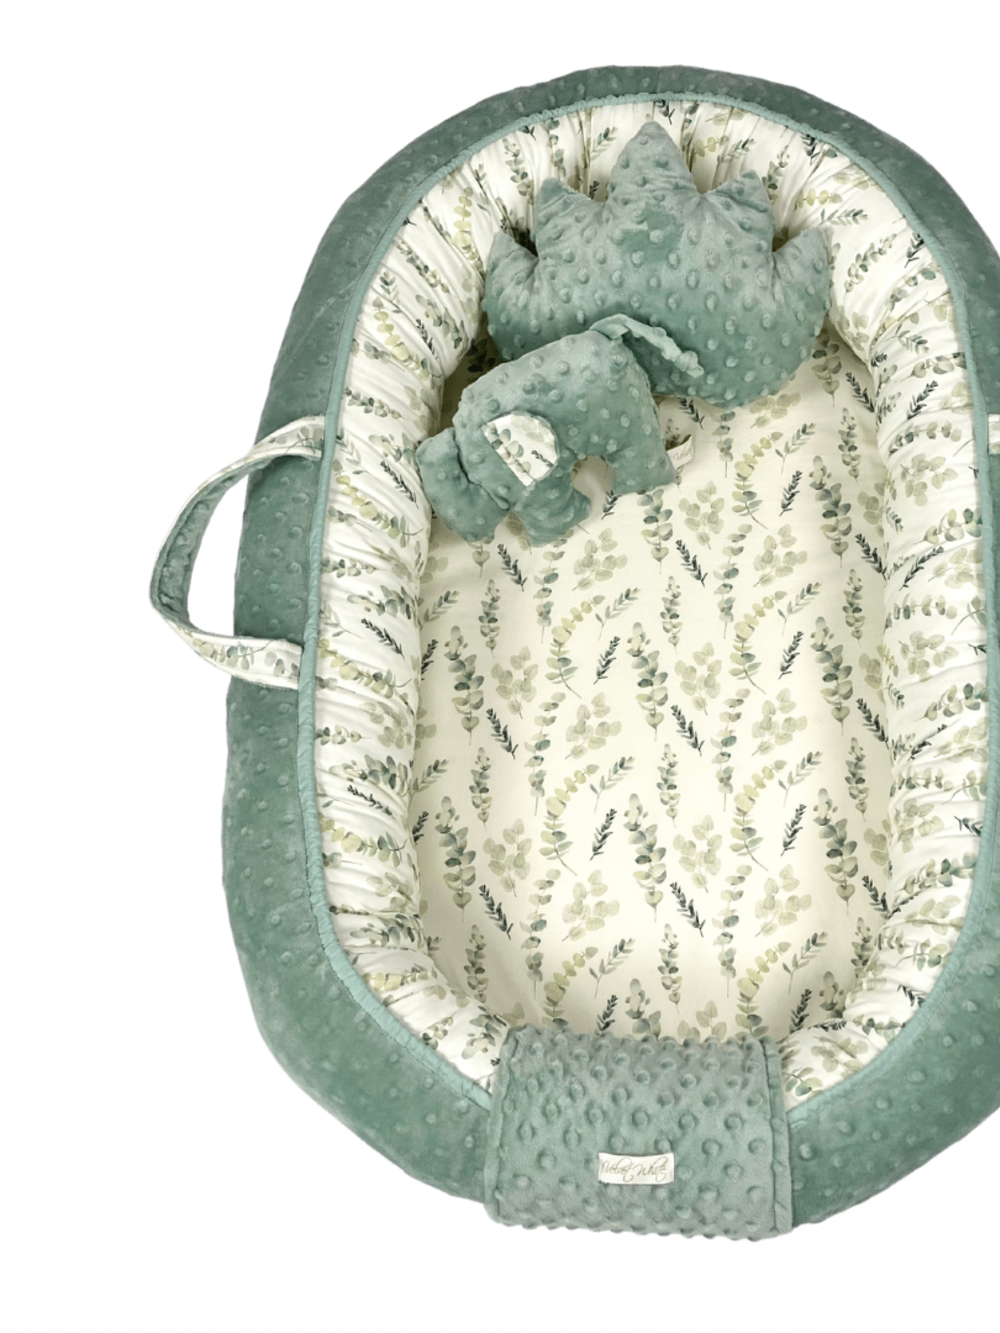 Eucalyptus Παιδική Φωλιά - Baby Nest